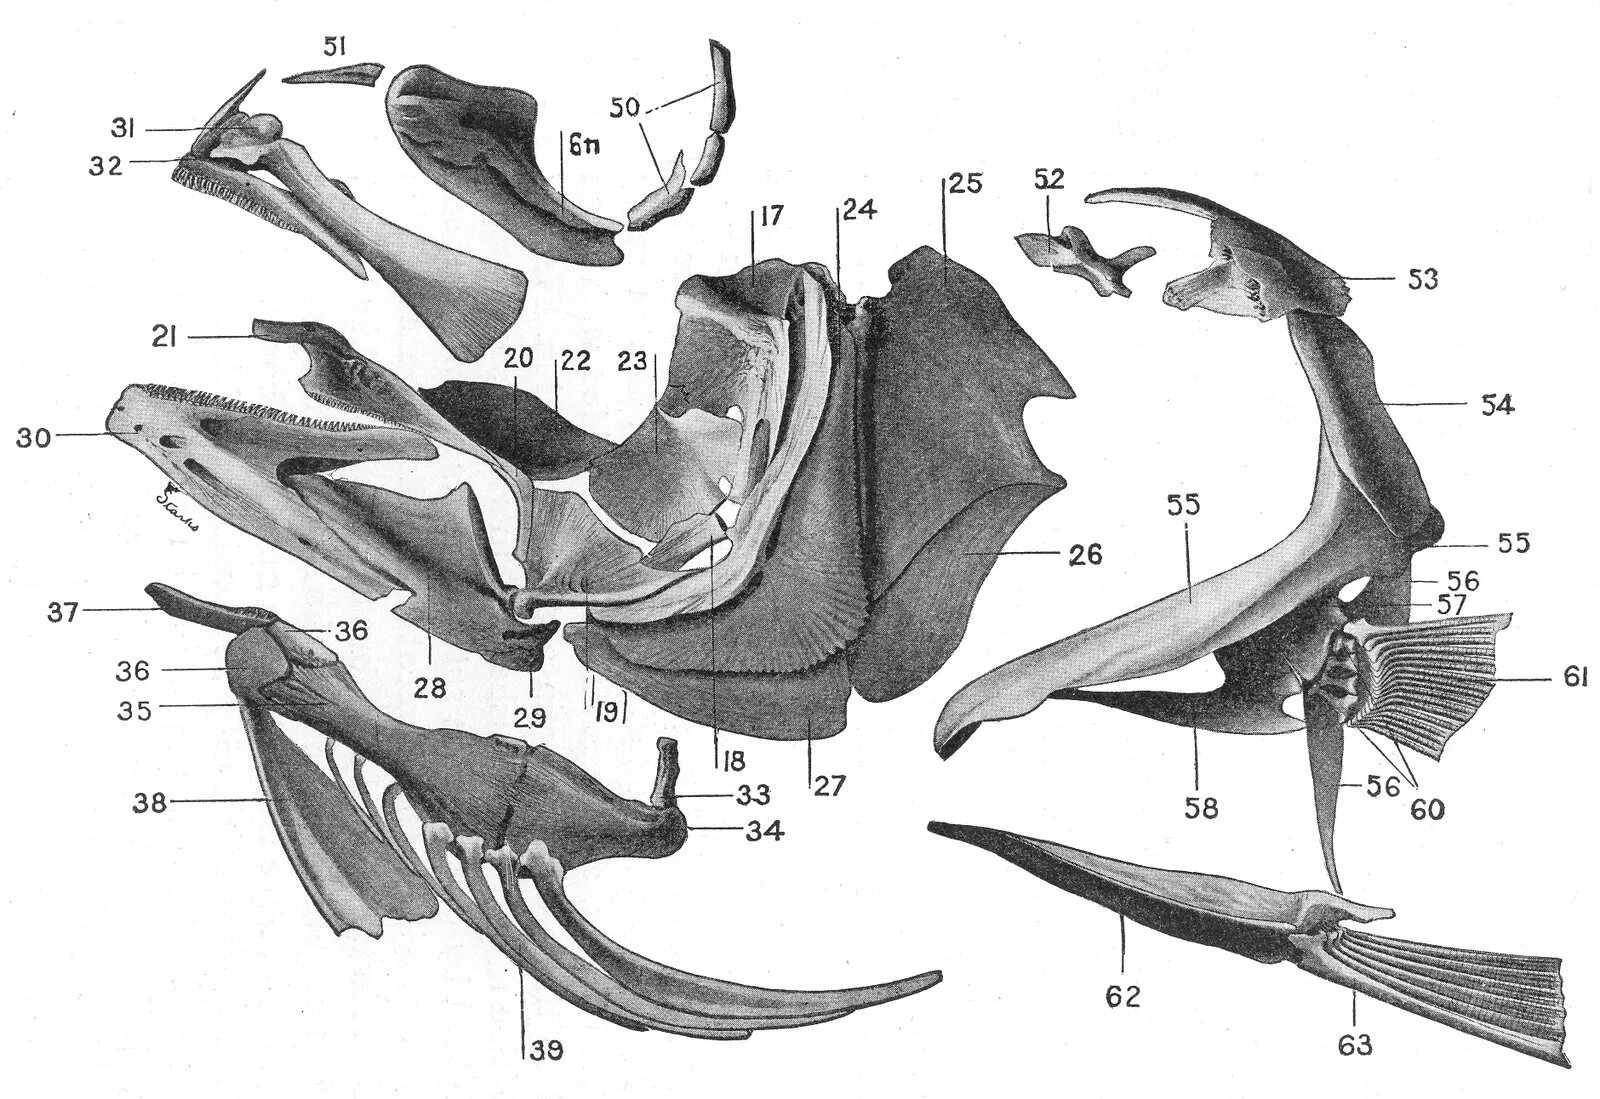 Кости черепа рыбы. Кости черепа костной рыбы. Подъязычная кость у рыб. Строение черепа костных рыб. Позвоночник неподвижно соединен с черепом у рыб